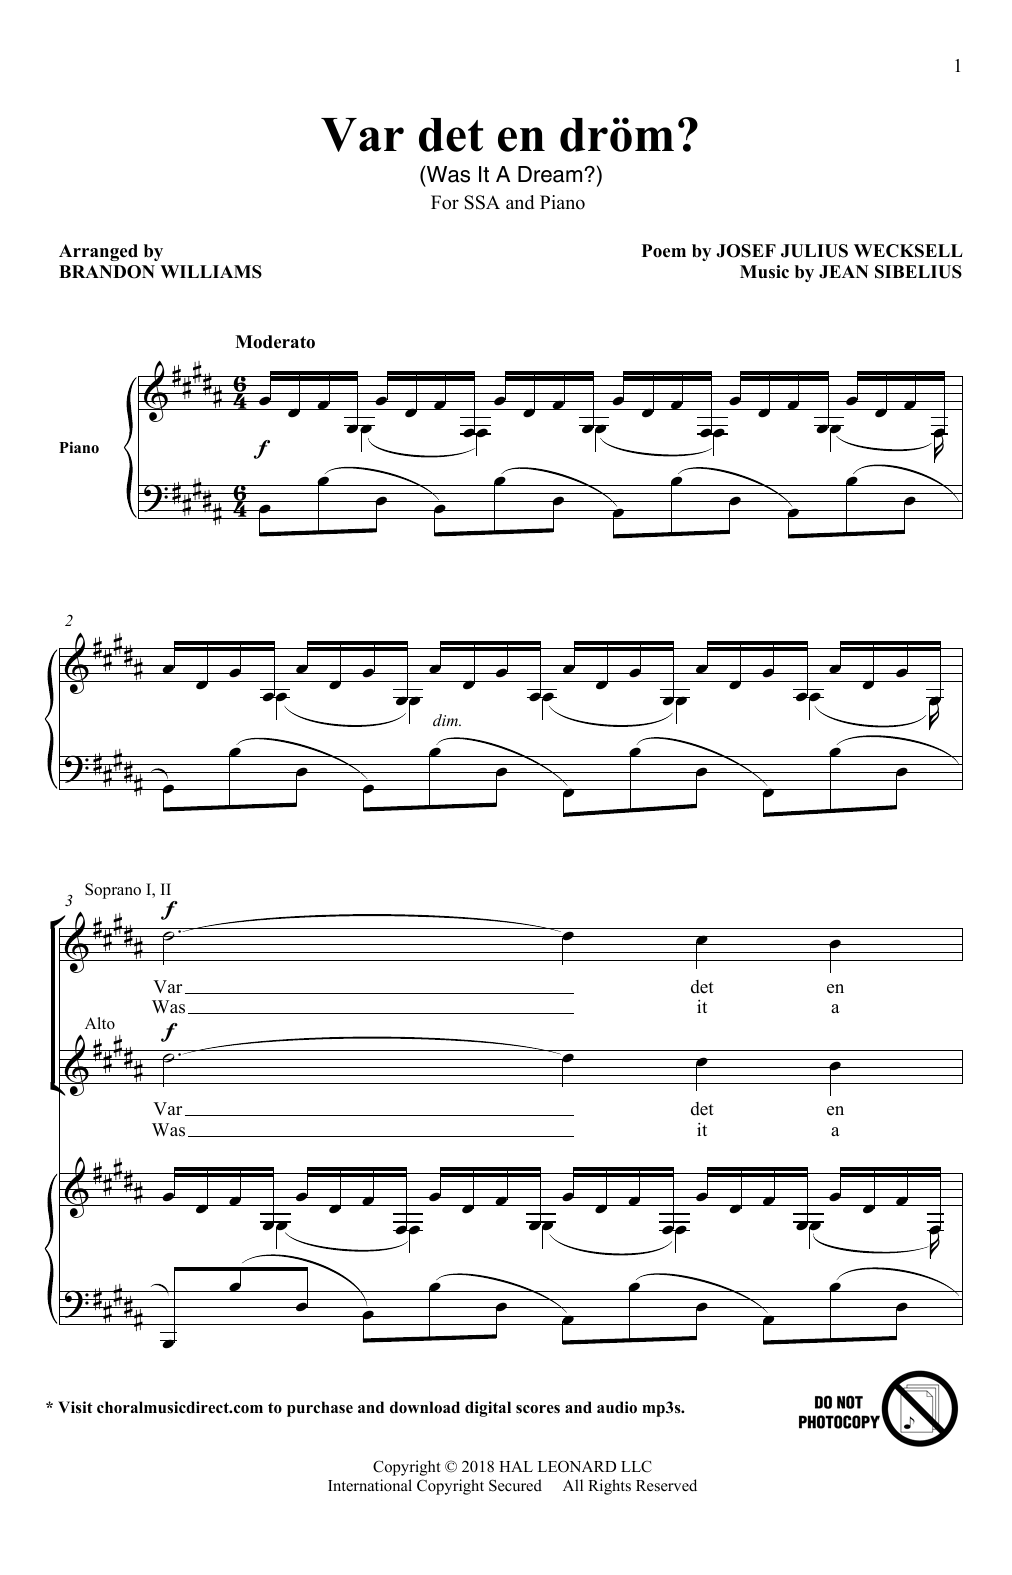 Brandon Williams Var Det En Drom? Sheet Music Notes & Chords for SSA - Download or Print PDF